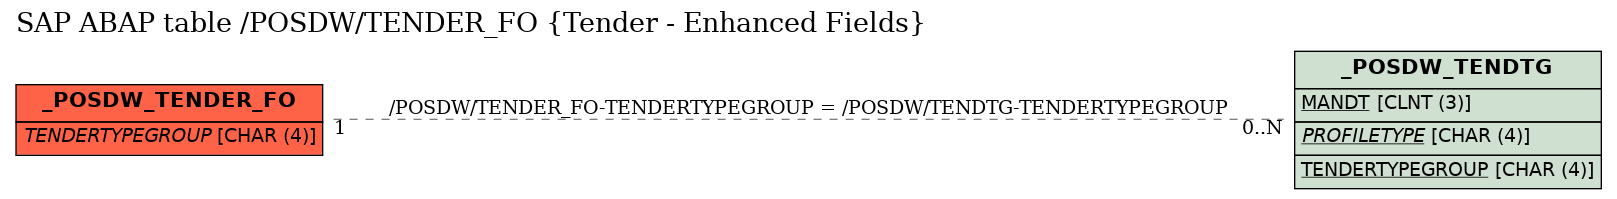 E-R Diagram for table /POSDW/TENDER_FO (Tender - Enhanced Fields)